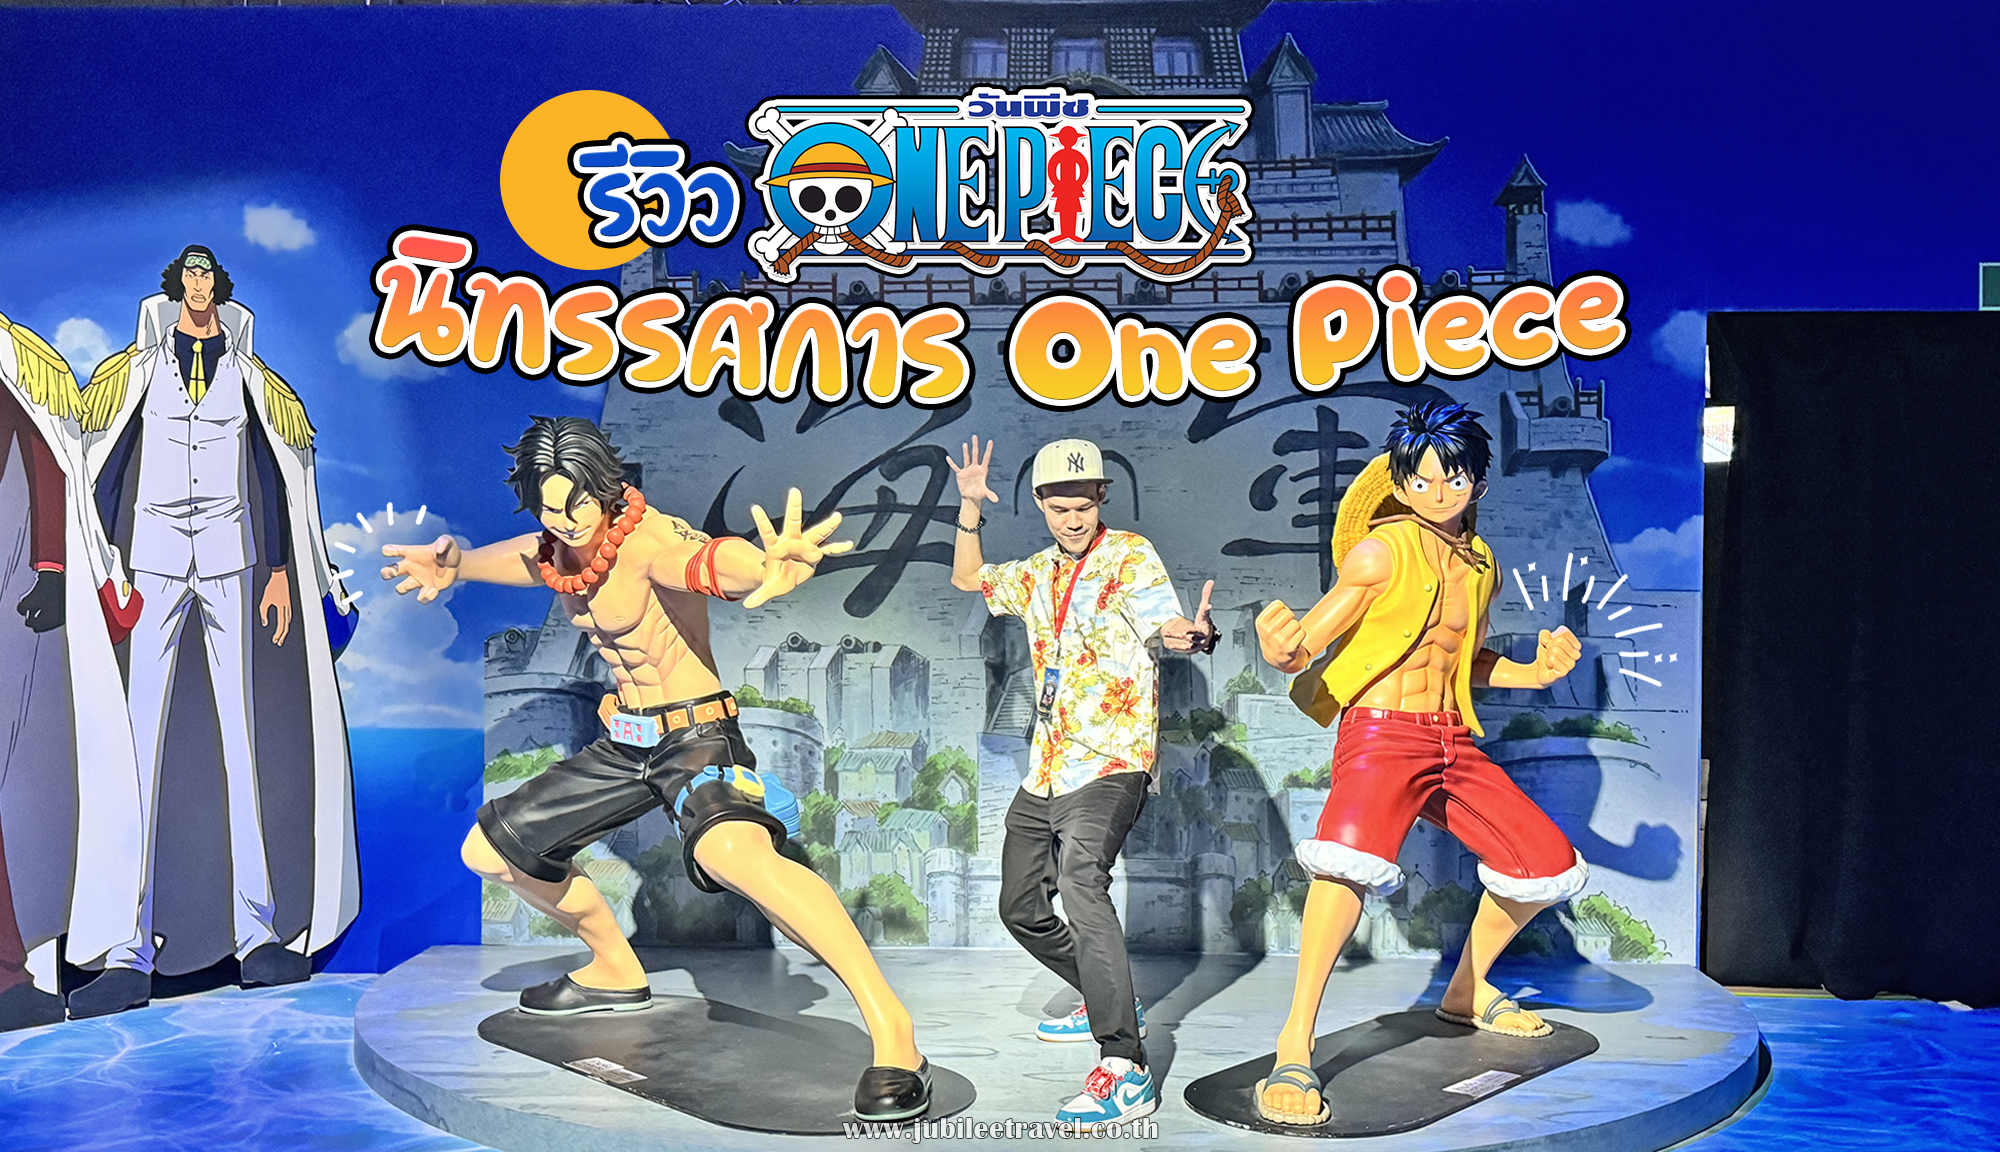 รีวิว นิทรรศการ One Piece ”The Great Era of Piracy” Exhibition Asia Tour ครั้งแรกในประเทศไทย!